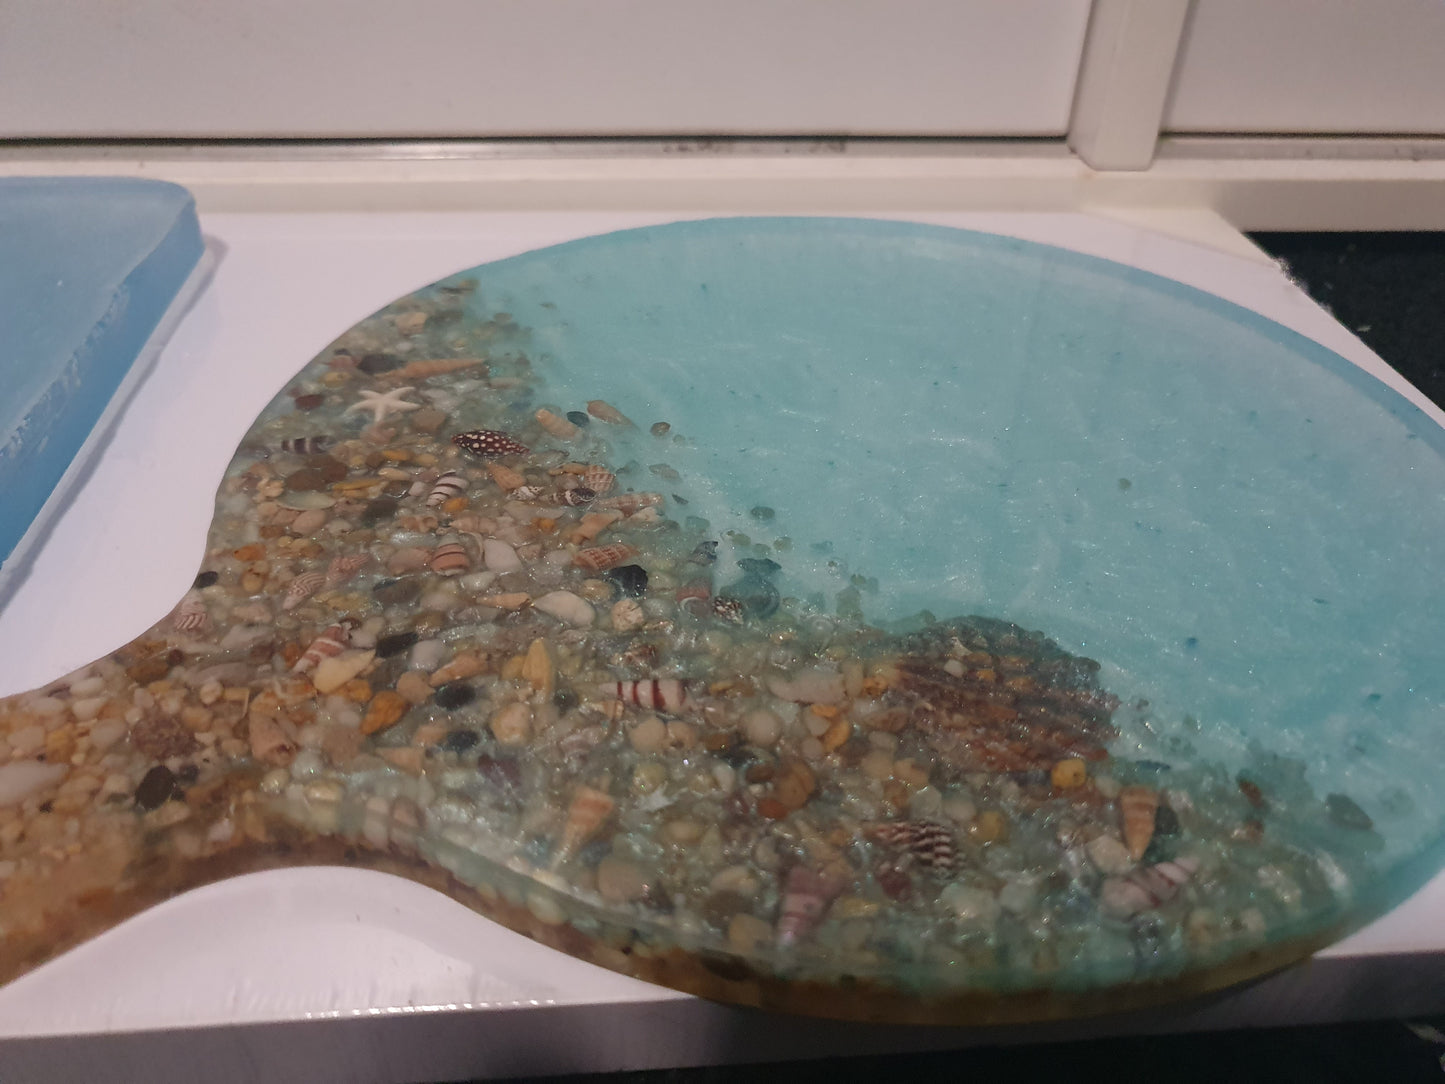 Unique translucent round seascape serving platter/ cheese board/ grazing board/ charcuterie board